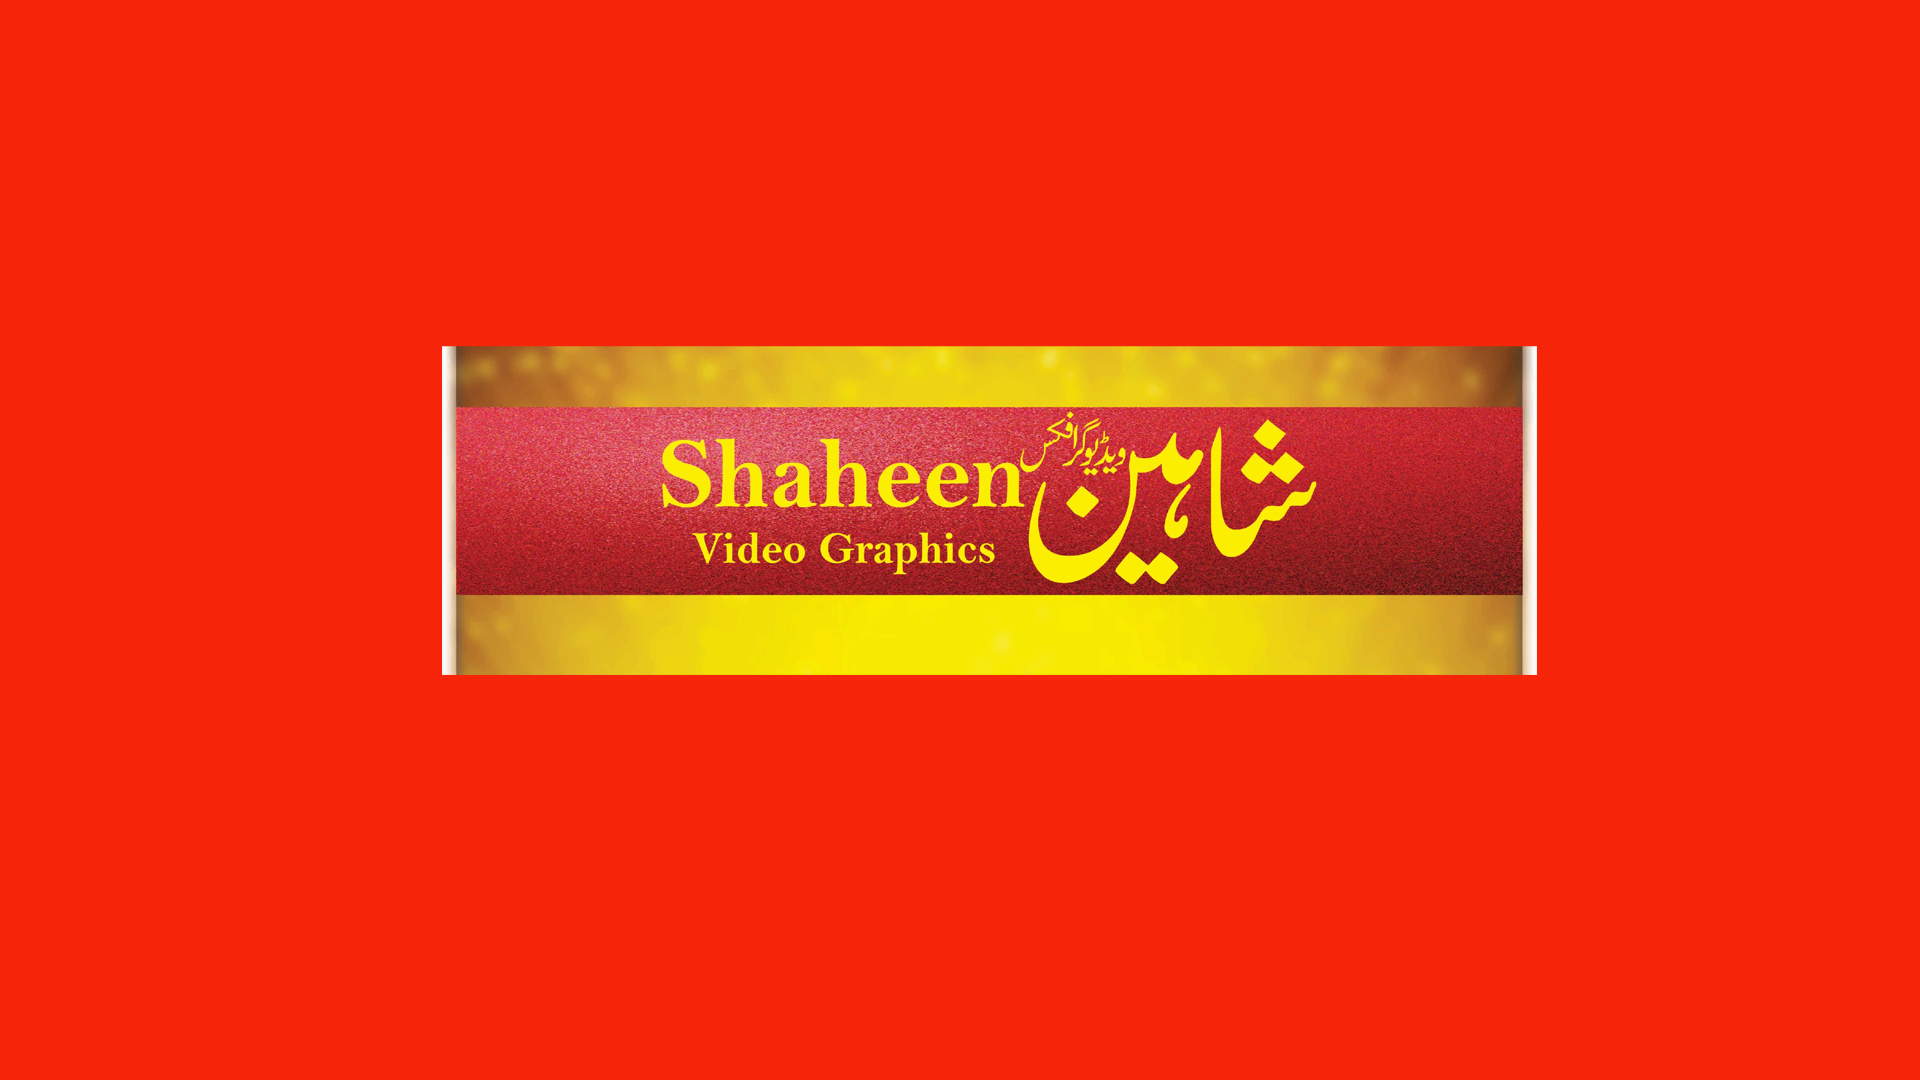 Shaheen Video Graphics